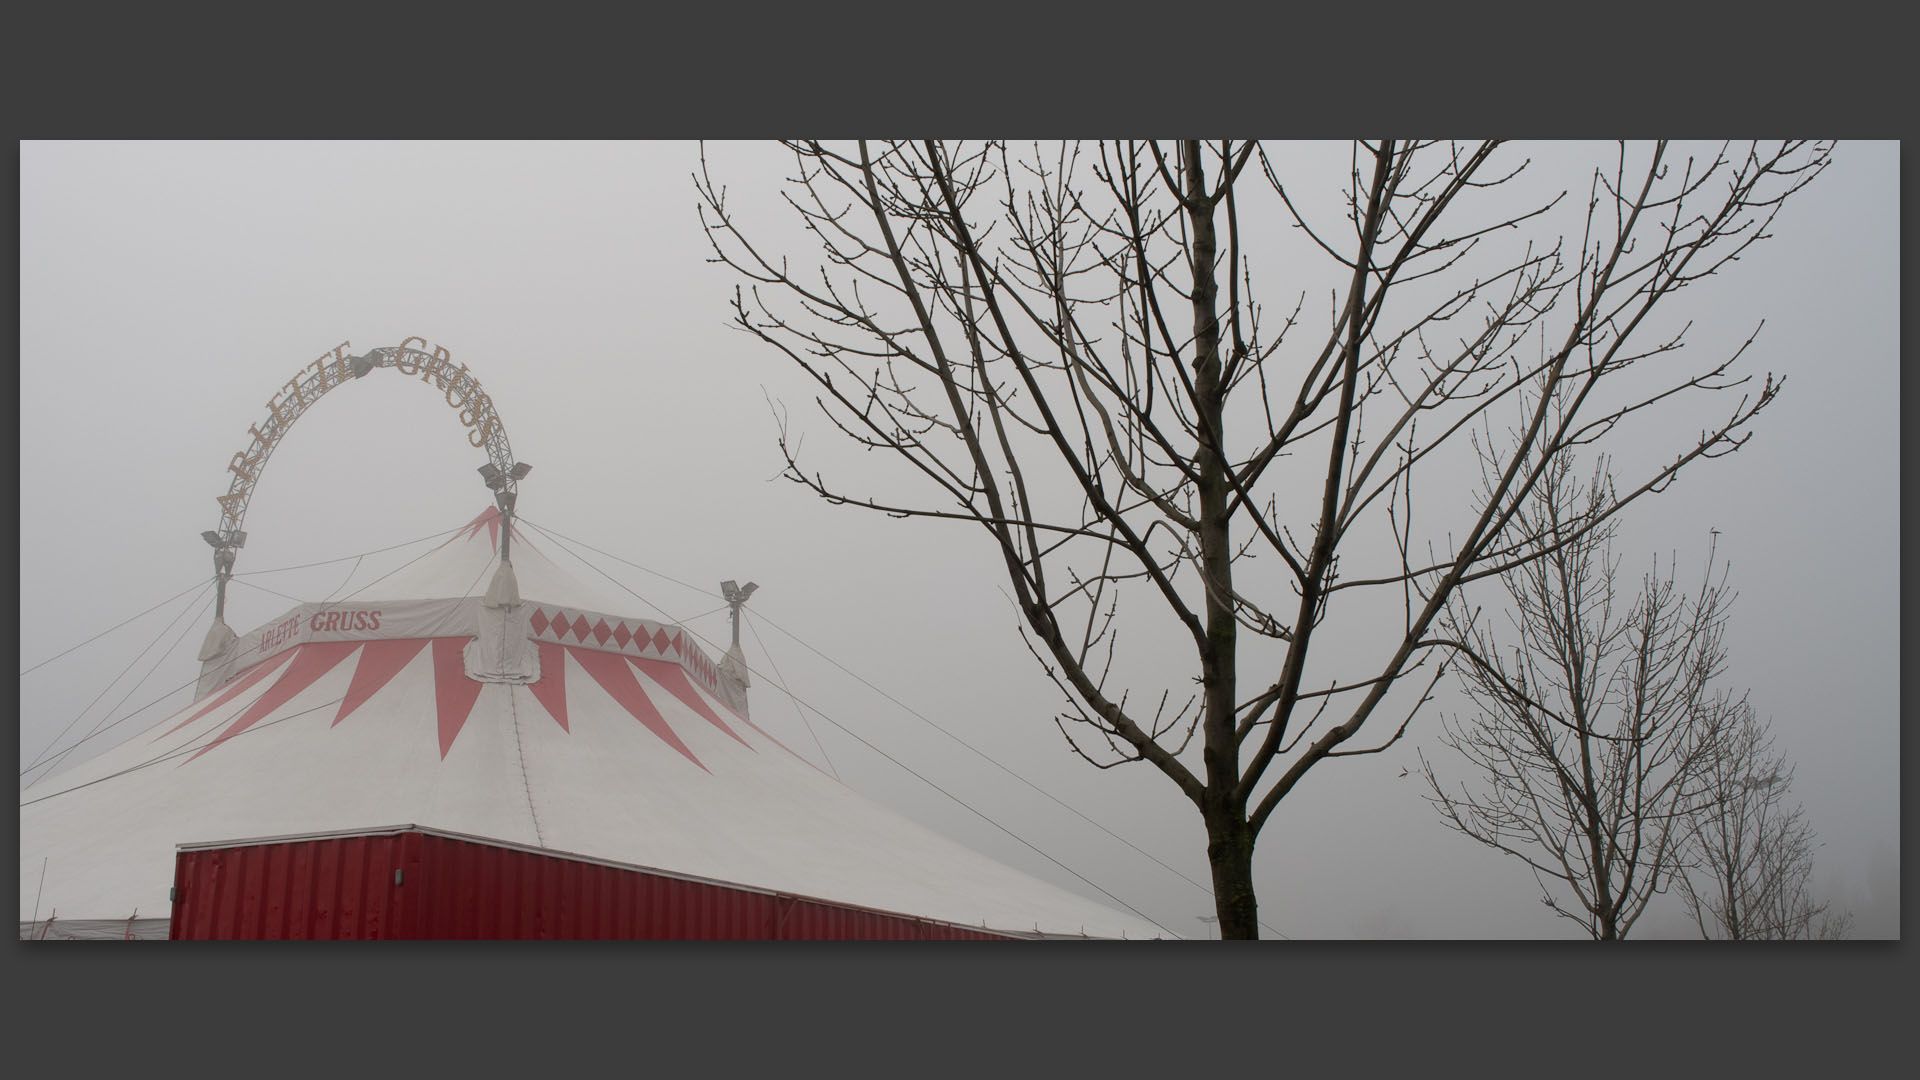 Le cirque Arlette Gruss dans le brouillard sur le parking de Carrefour, à Wasquehal.